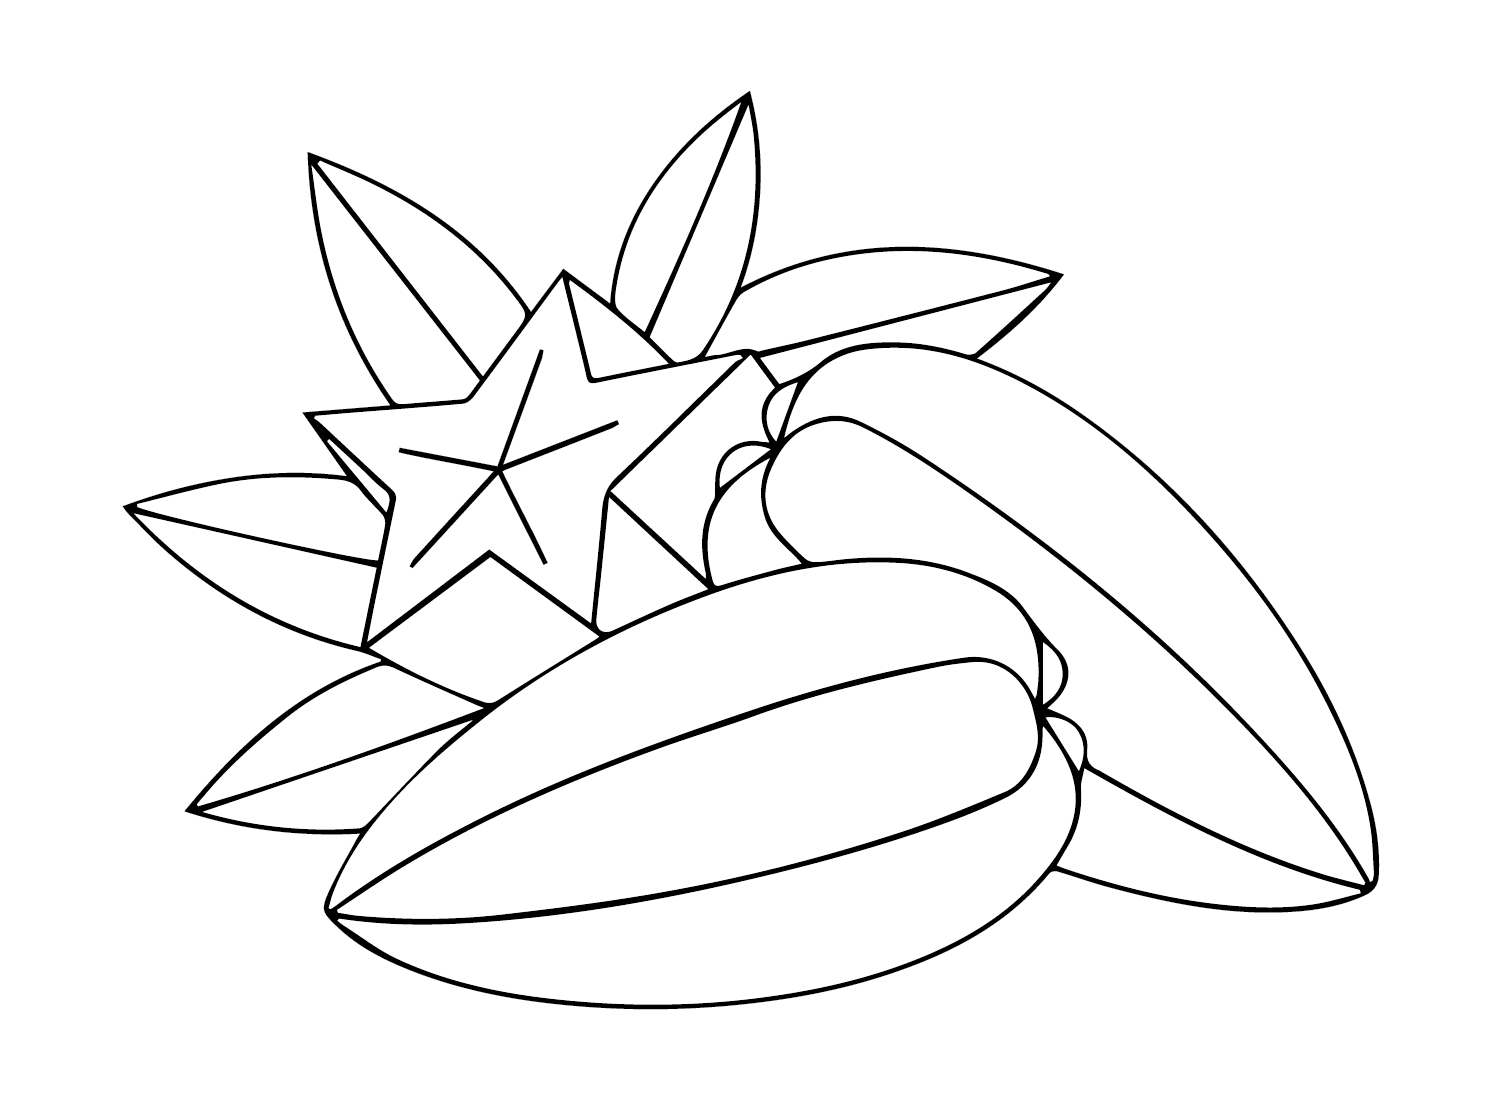 Carambola grátis da Star Fruit